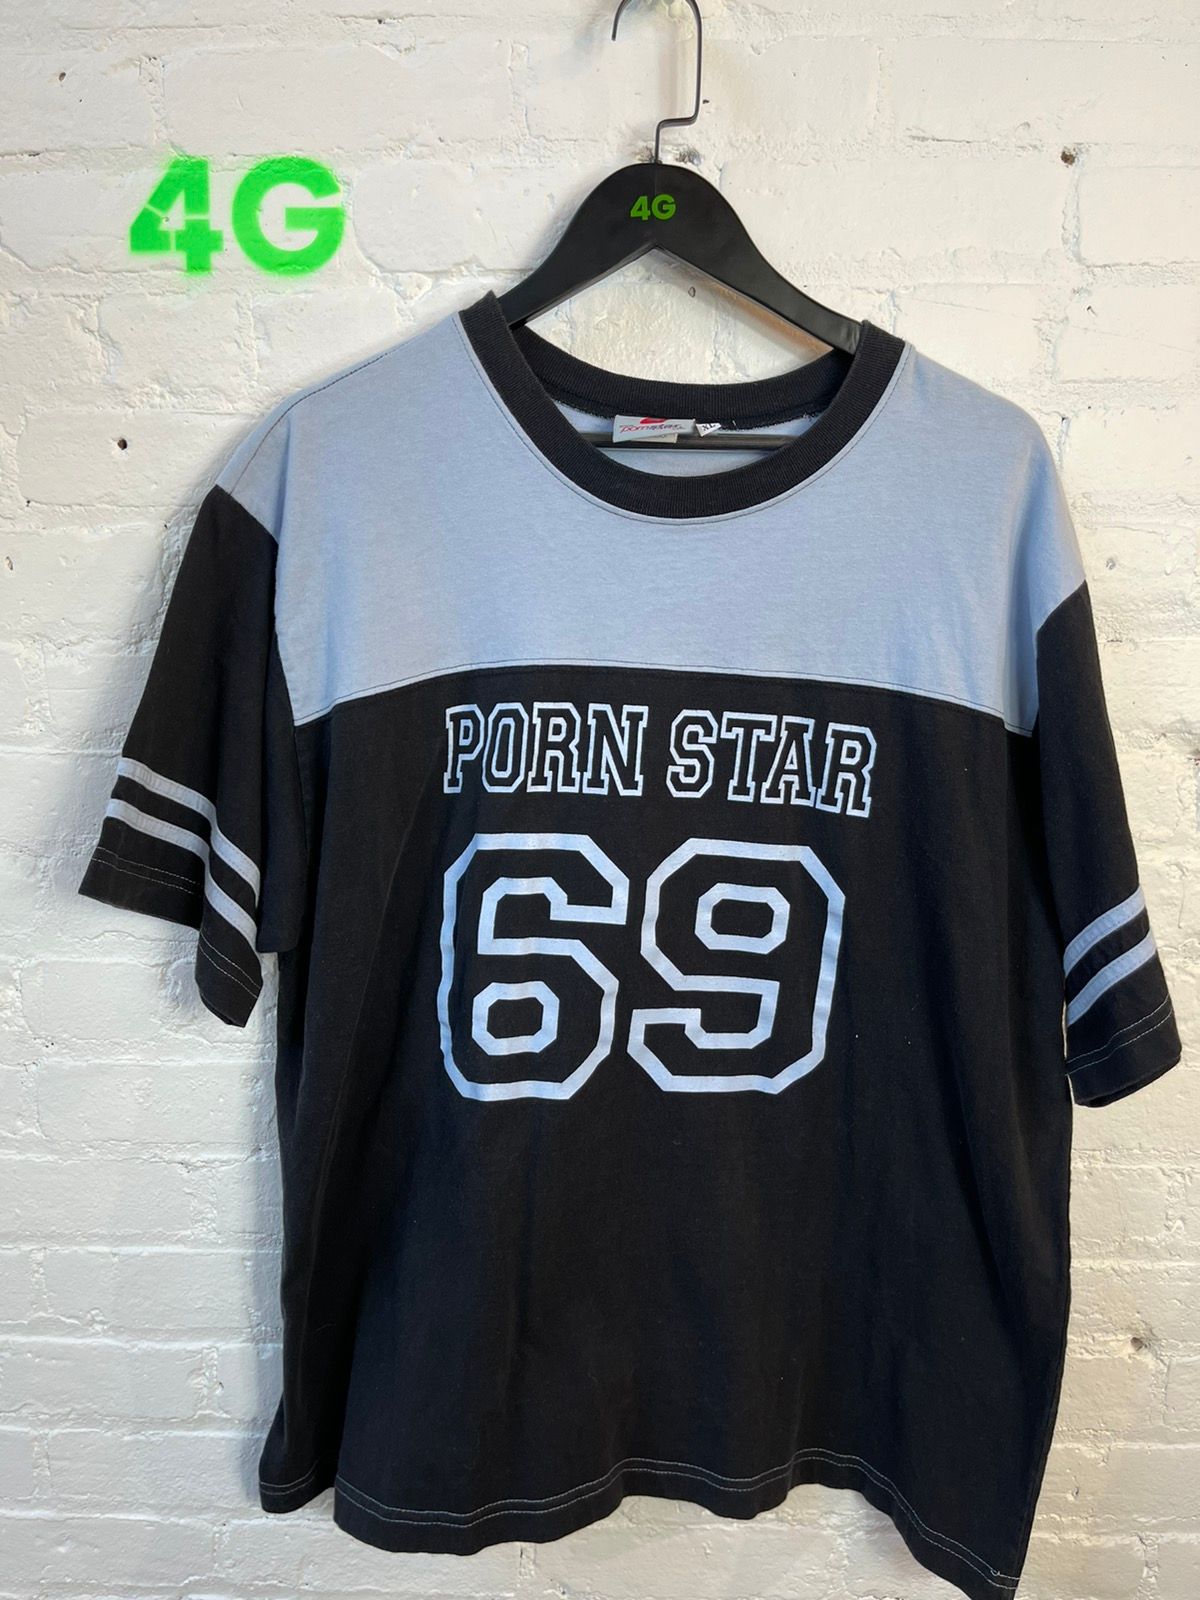 90s PORNSTAR PORN BRAND 69 Jersey shirt XL